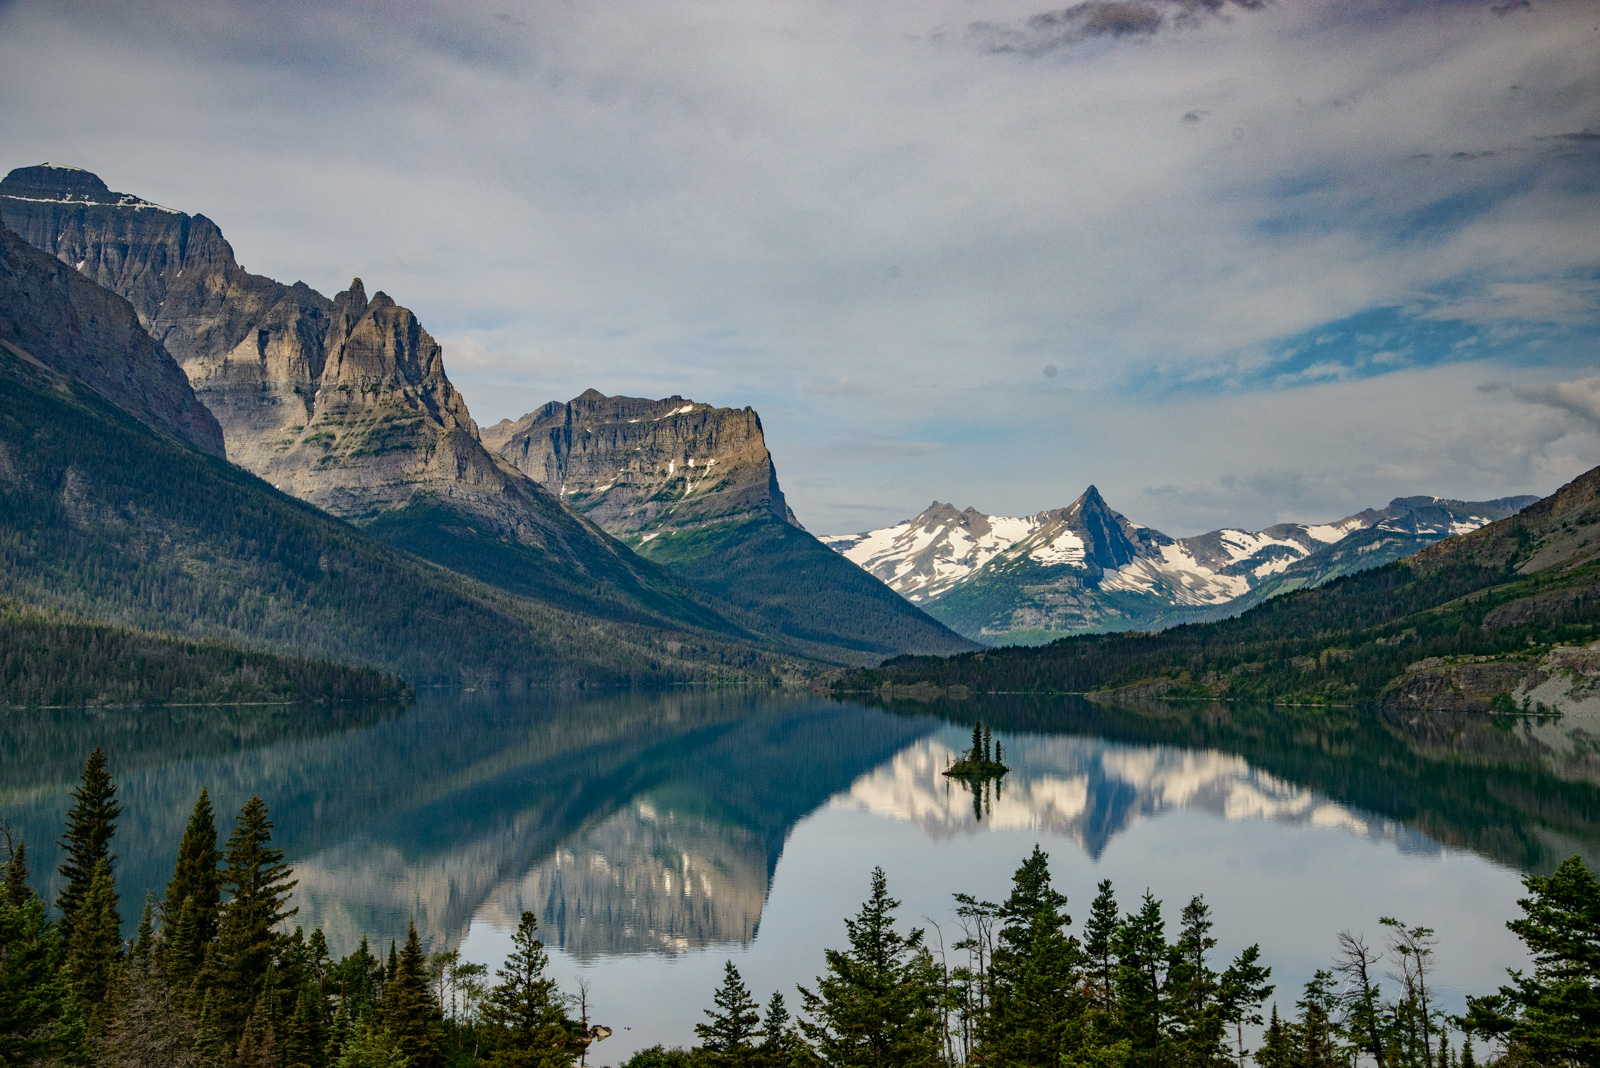 Beautiful Nature Photography, Montana Photos, Glacier Park Photos, Mountain Photography